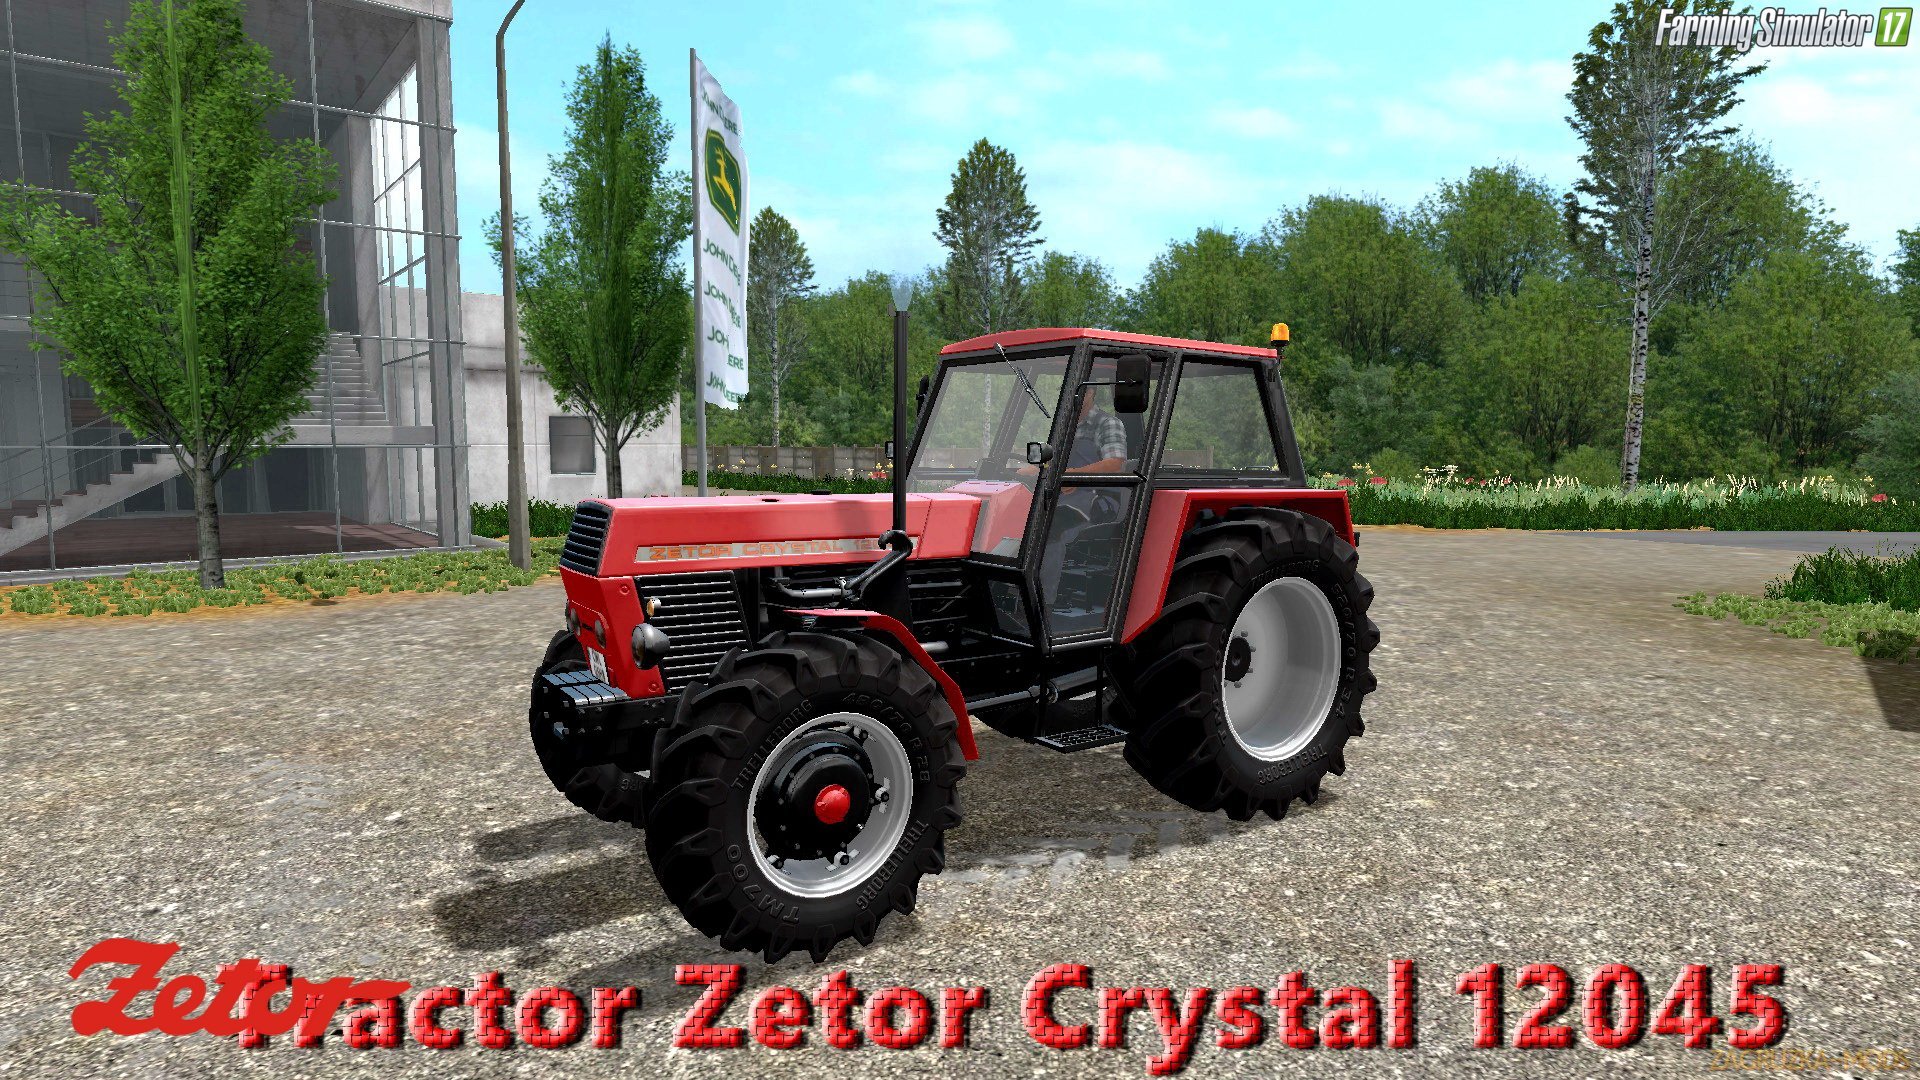 Tractor Zetor Crystal 12045 v1.1 for FS 17